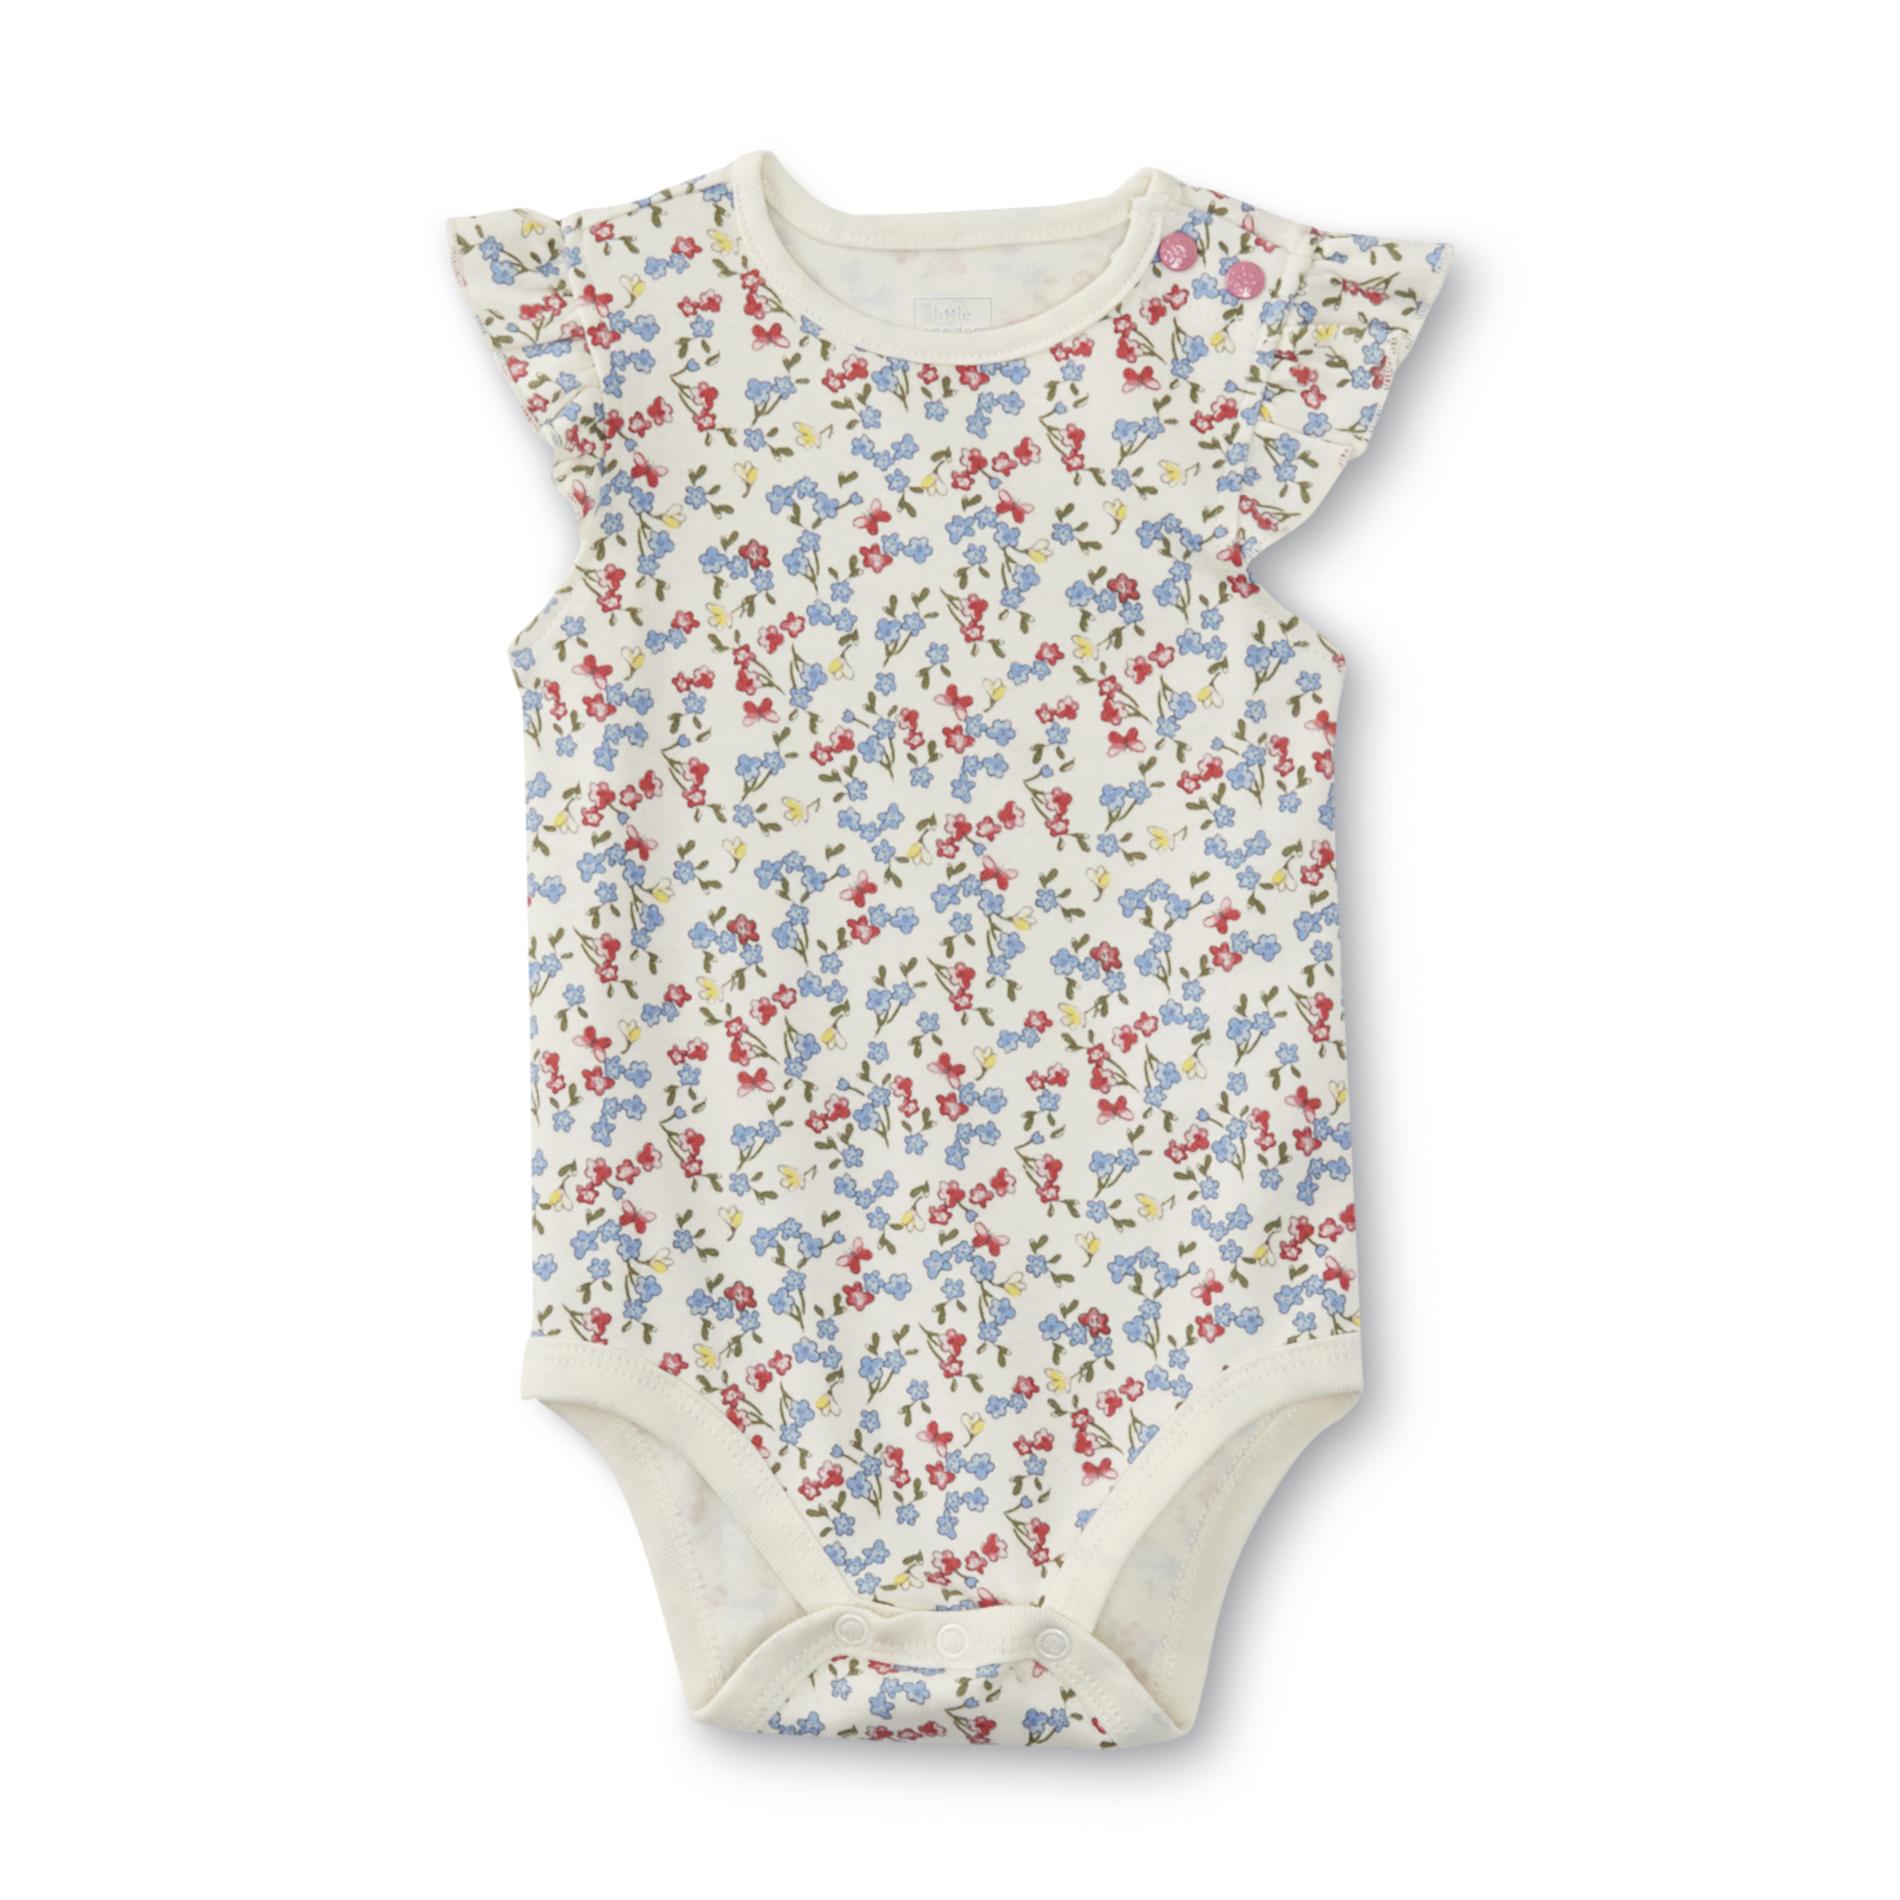 Newborn & Infant Girl's Sleeveless Bodysuit - Floral